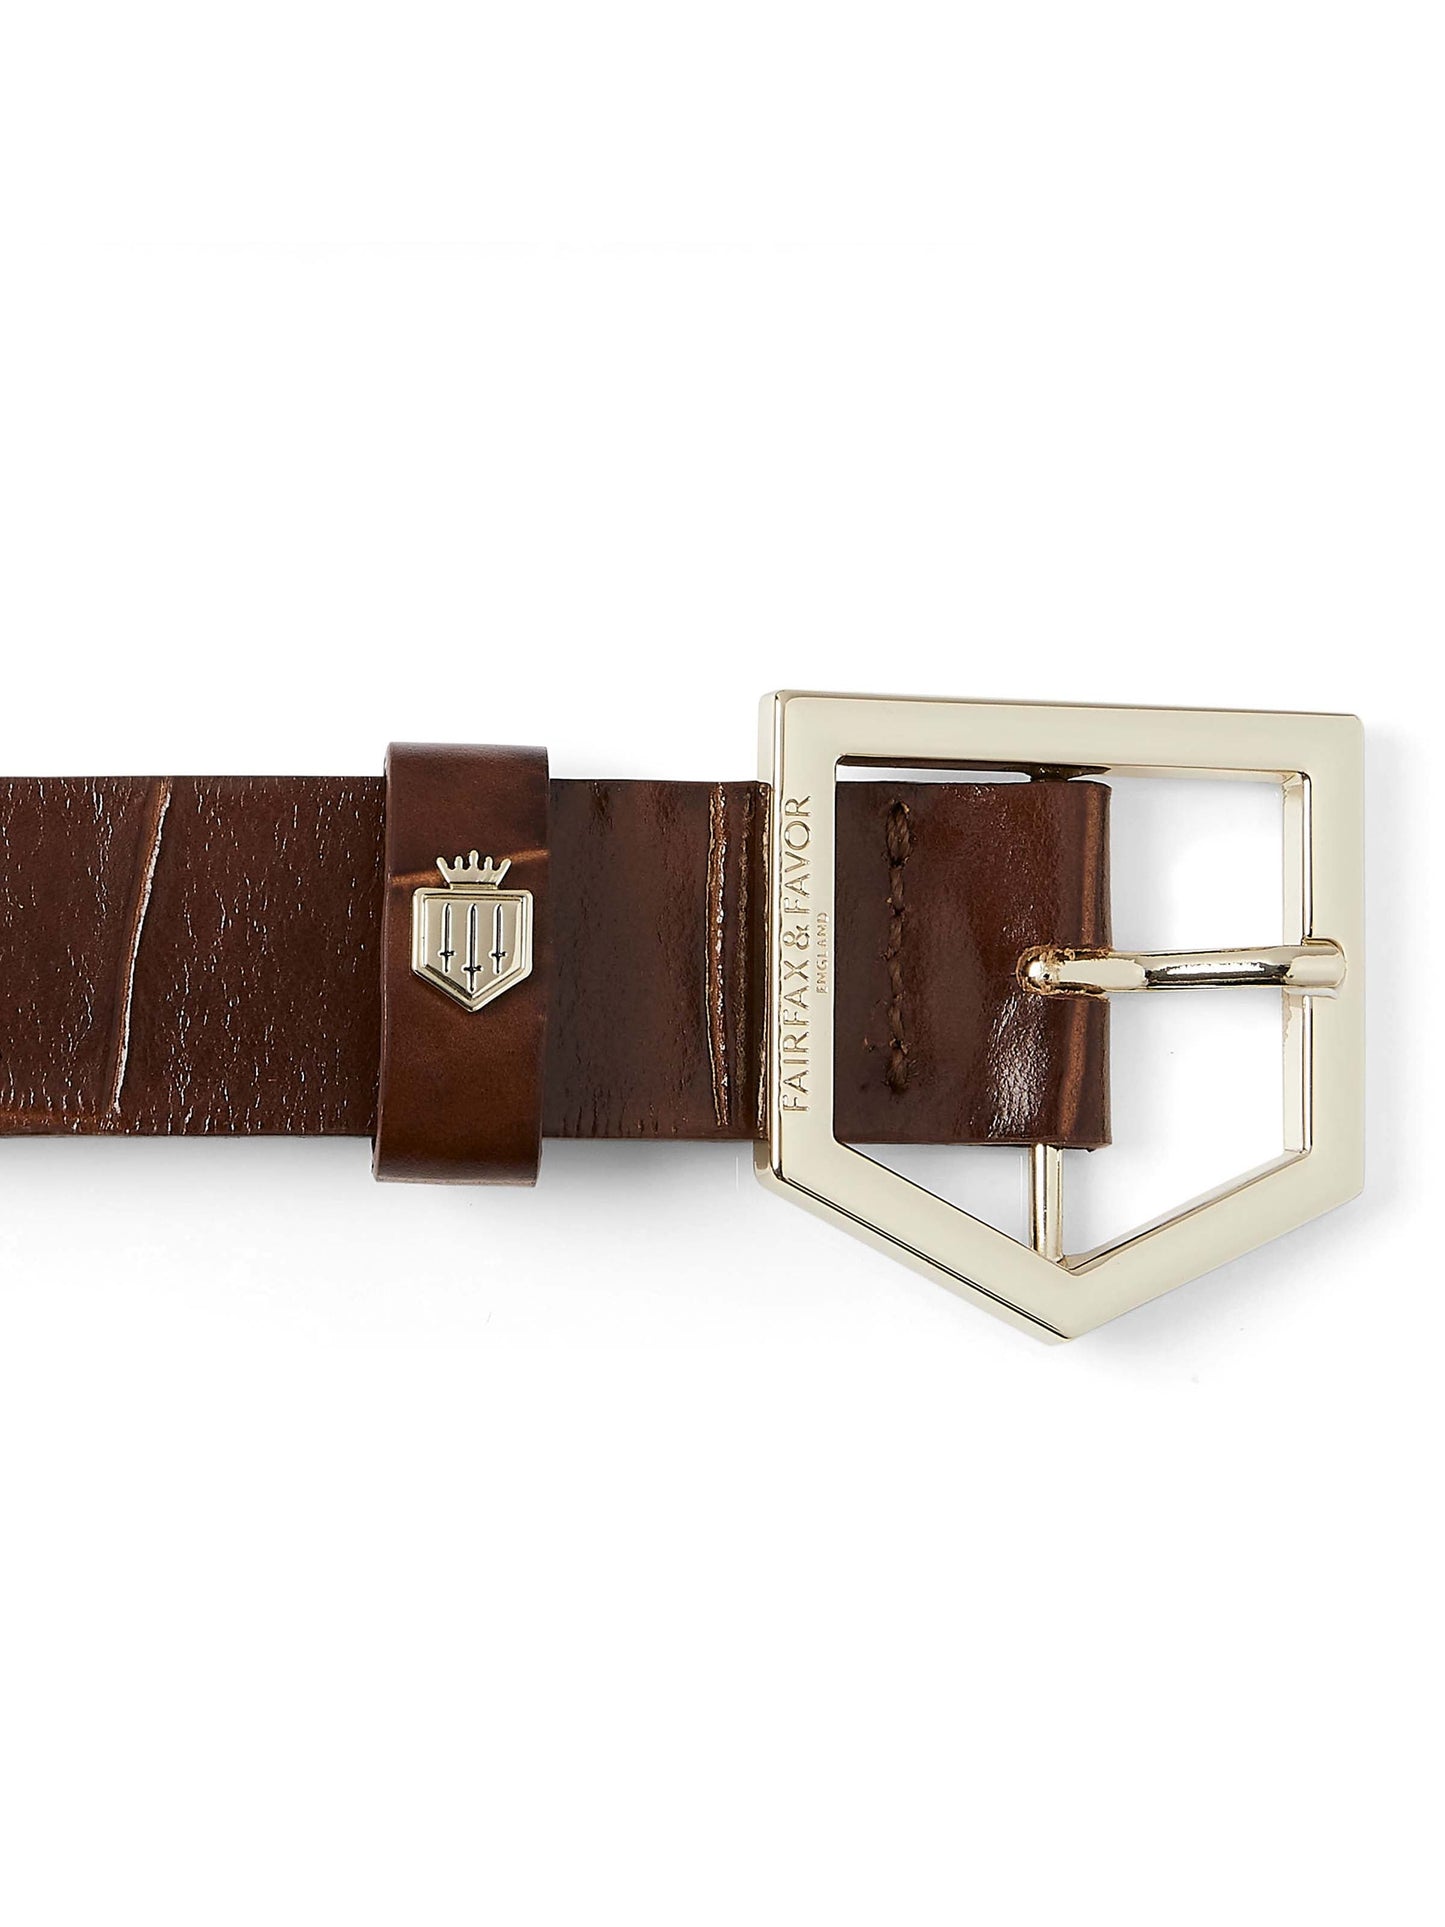 The Senowwe Belt - Conker Leather